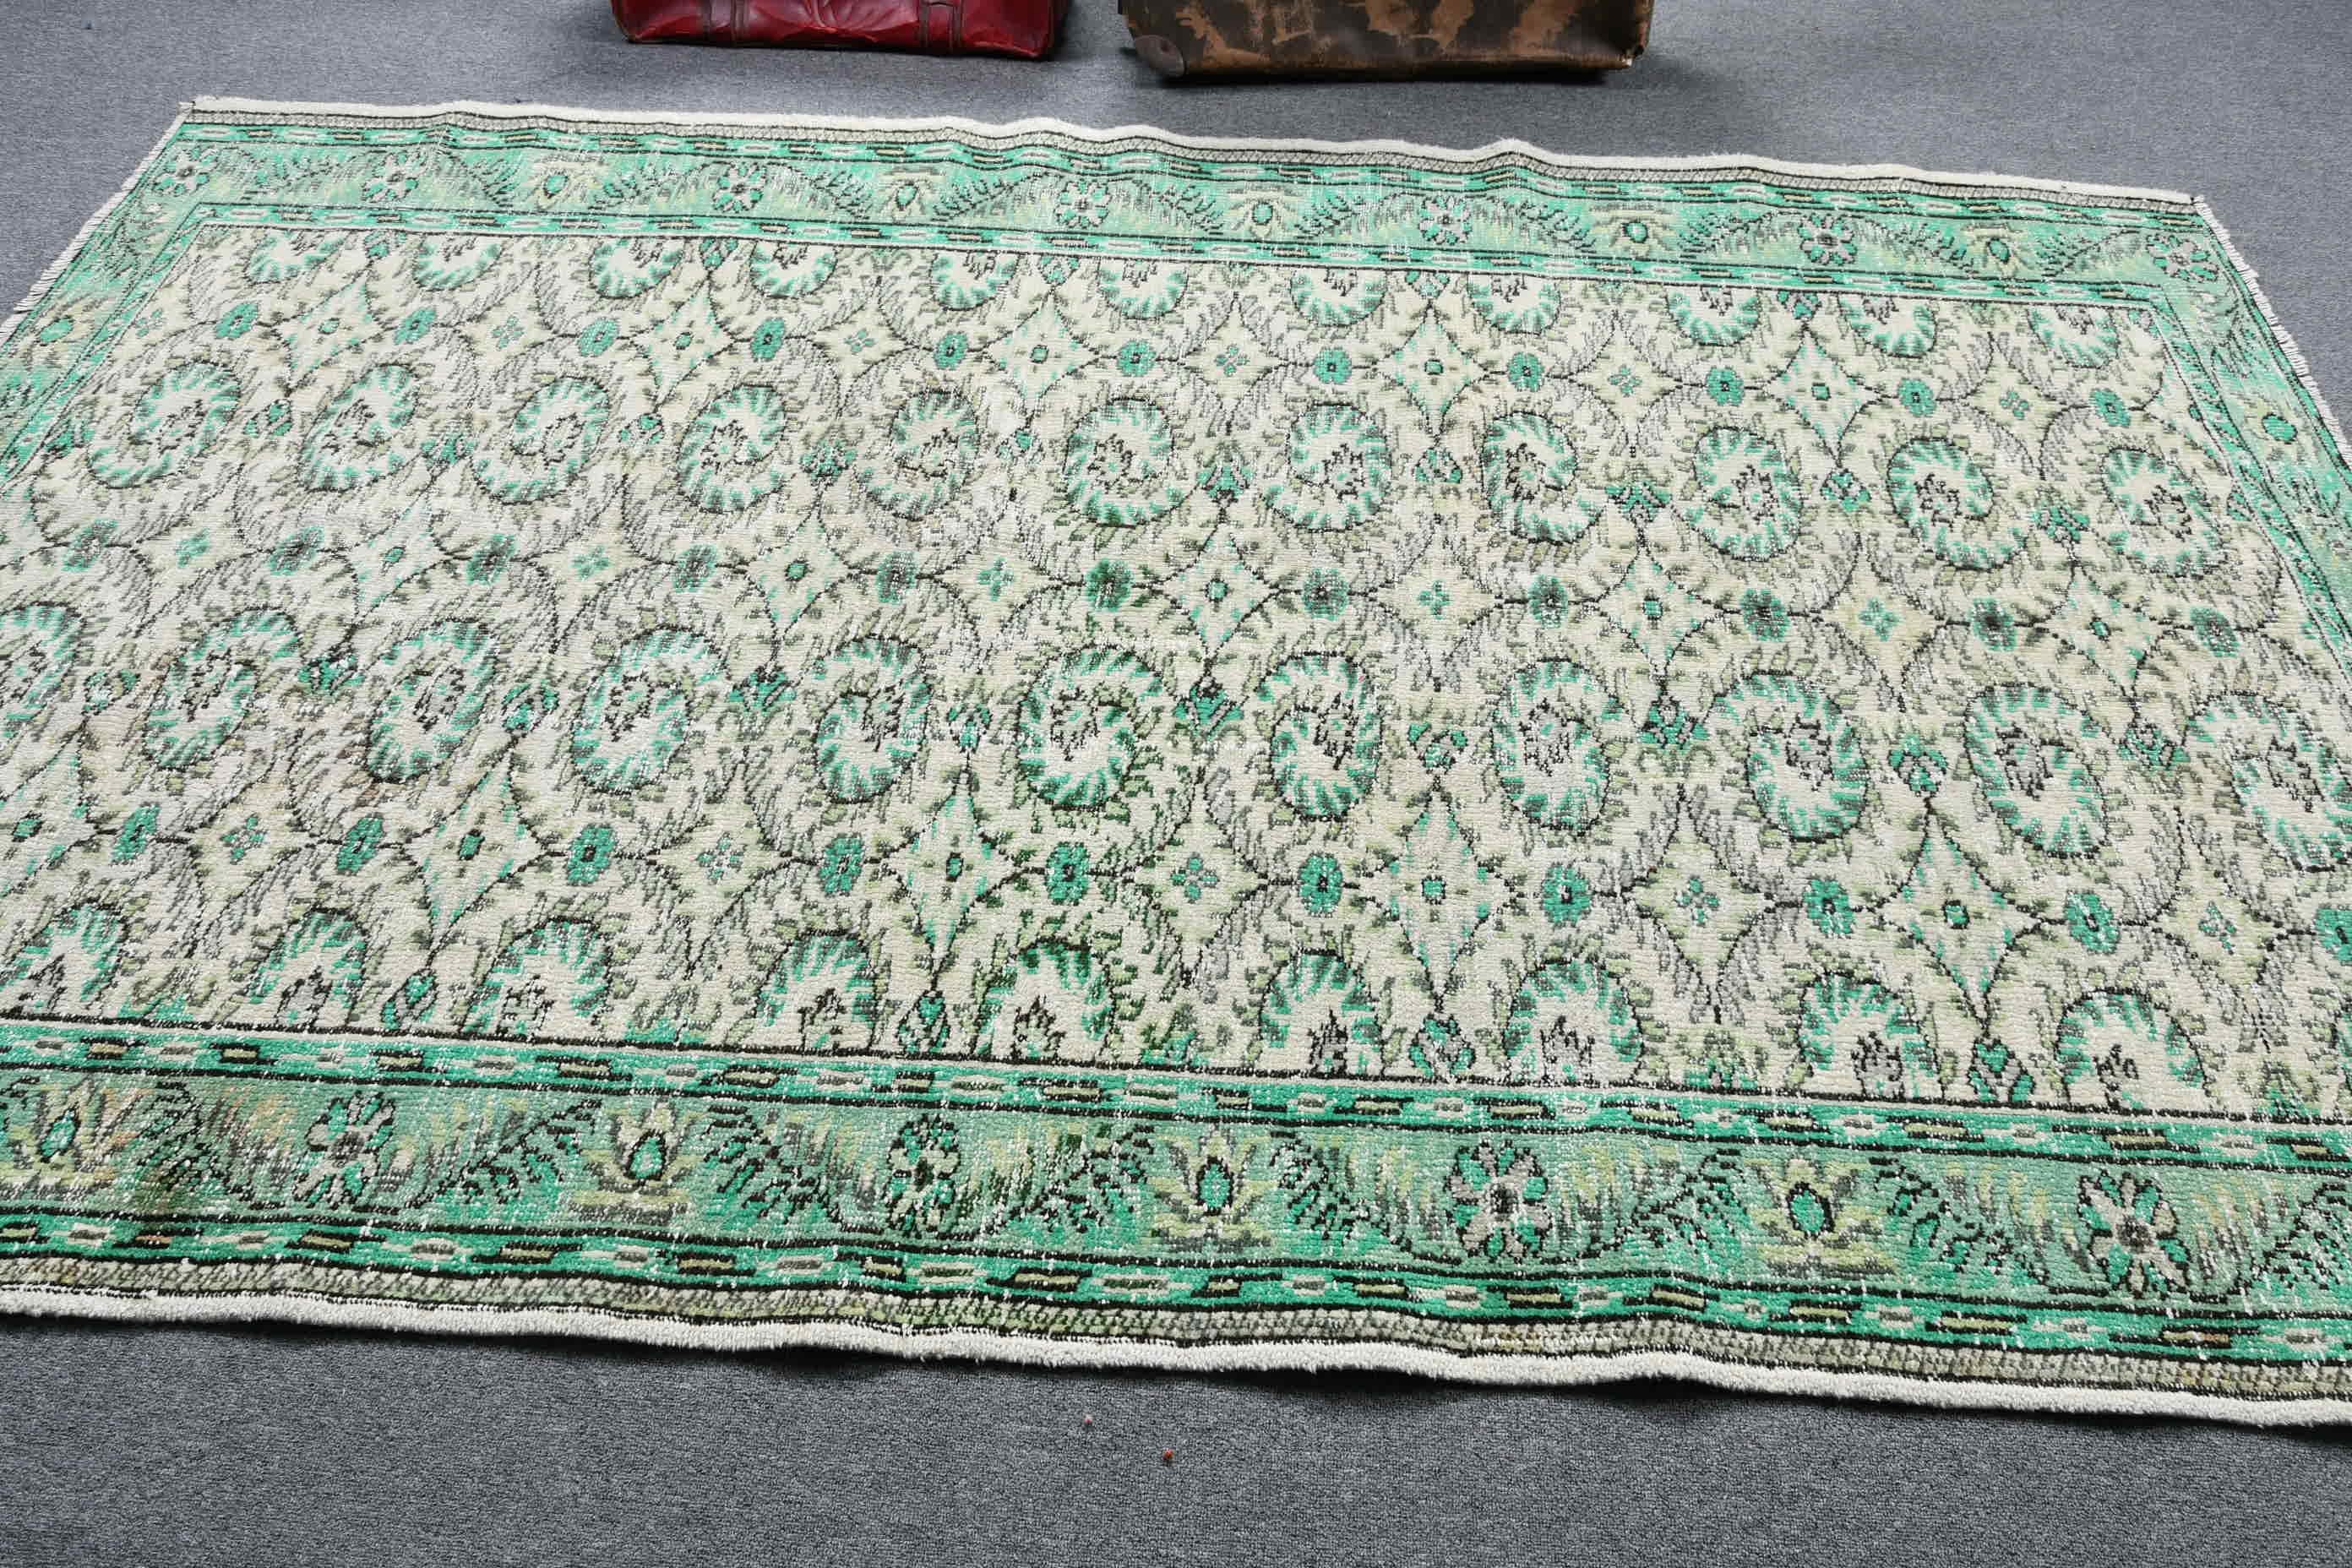 Turkish Rugs, Green Bedroom Rug, Nomadic Rug, Vintage Rugs, Salon Rugs, Dining Room Rug, Antique Rug, 5.5x8.8 ft Large Rugs